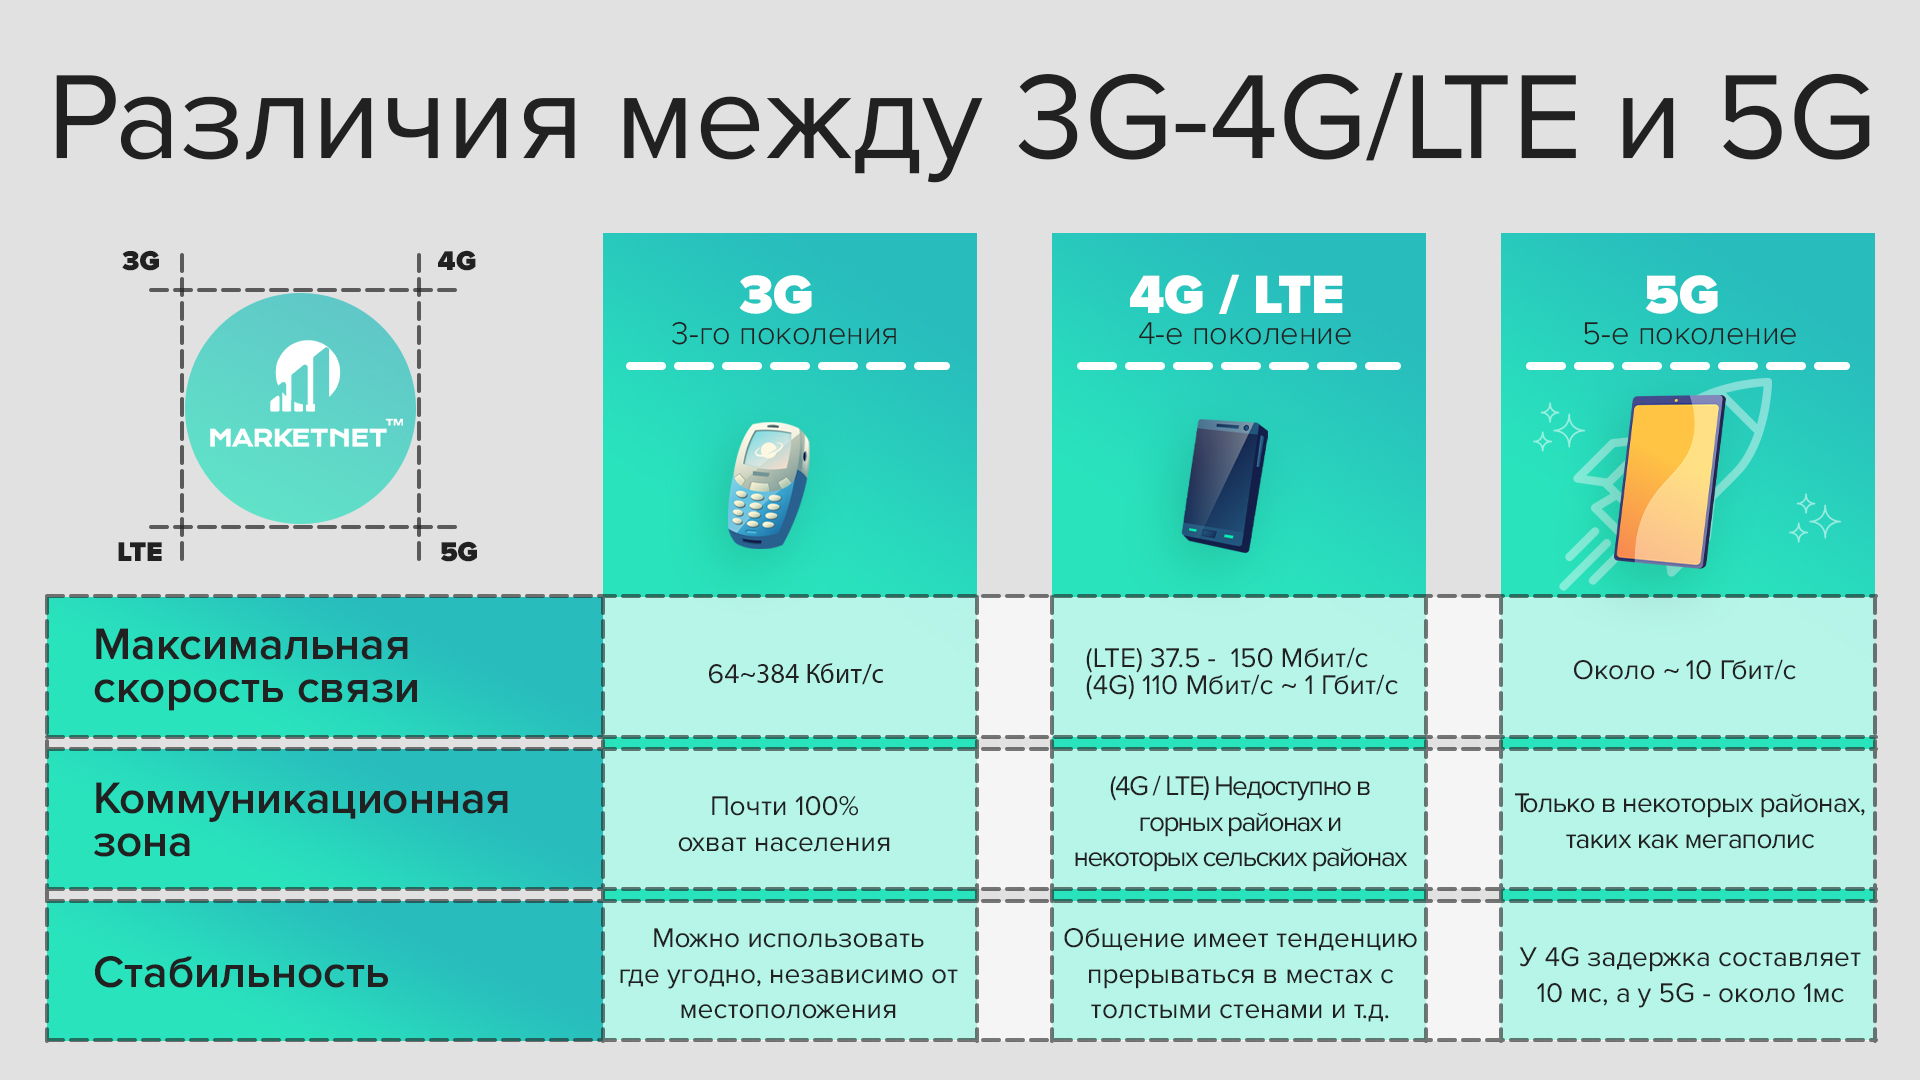 Сравнение 3G, 4G LTE и 5G на Marketnet. Разница в скорости: максимальная скорость связи, коммуникационная зона, стабильность передачи данных каждого поколения мобильной связи